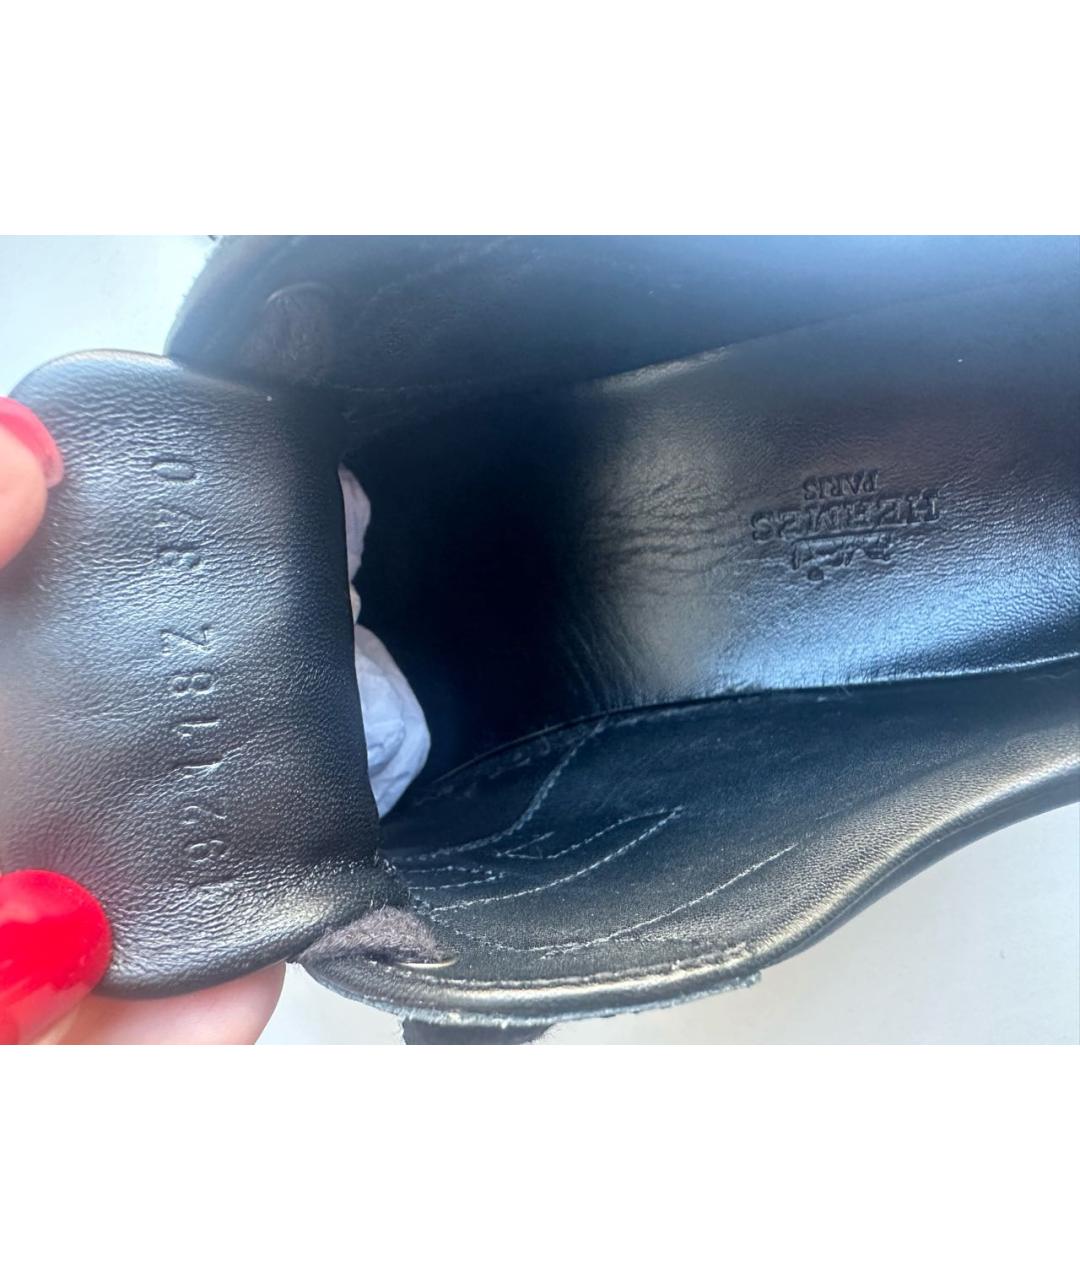 HERMES PRE-OWNED Черные кожаные кроссовки, фото 4